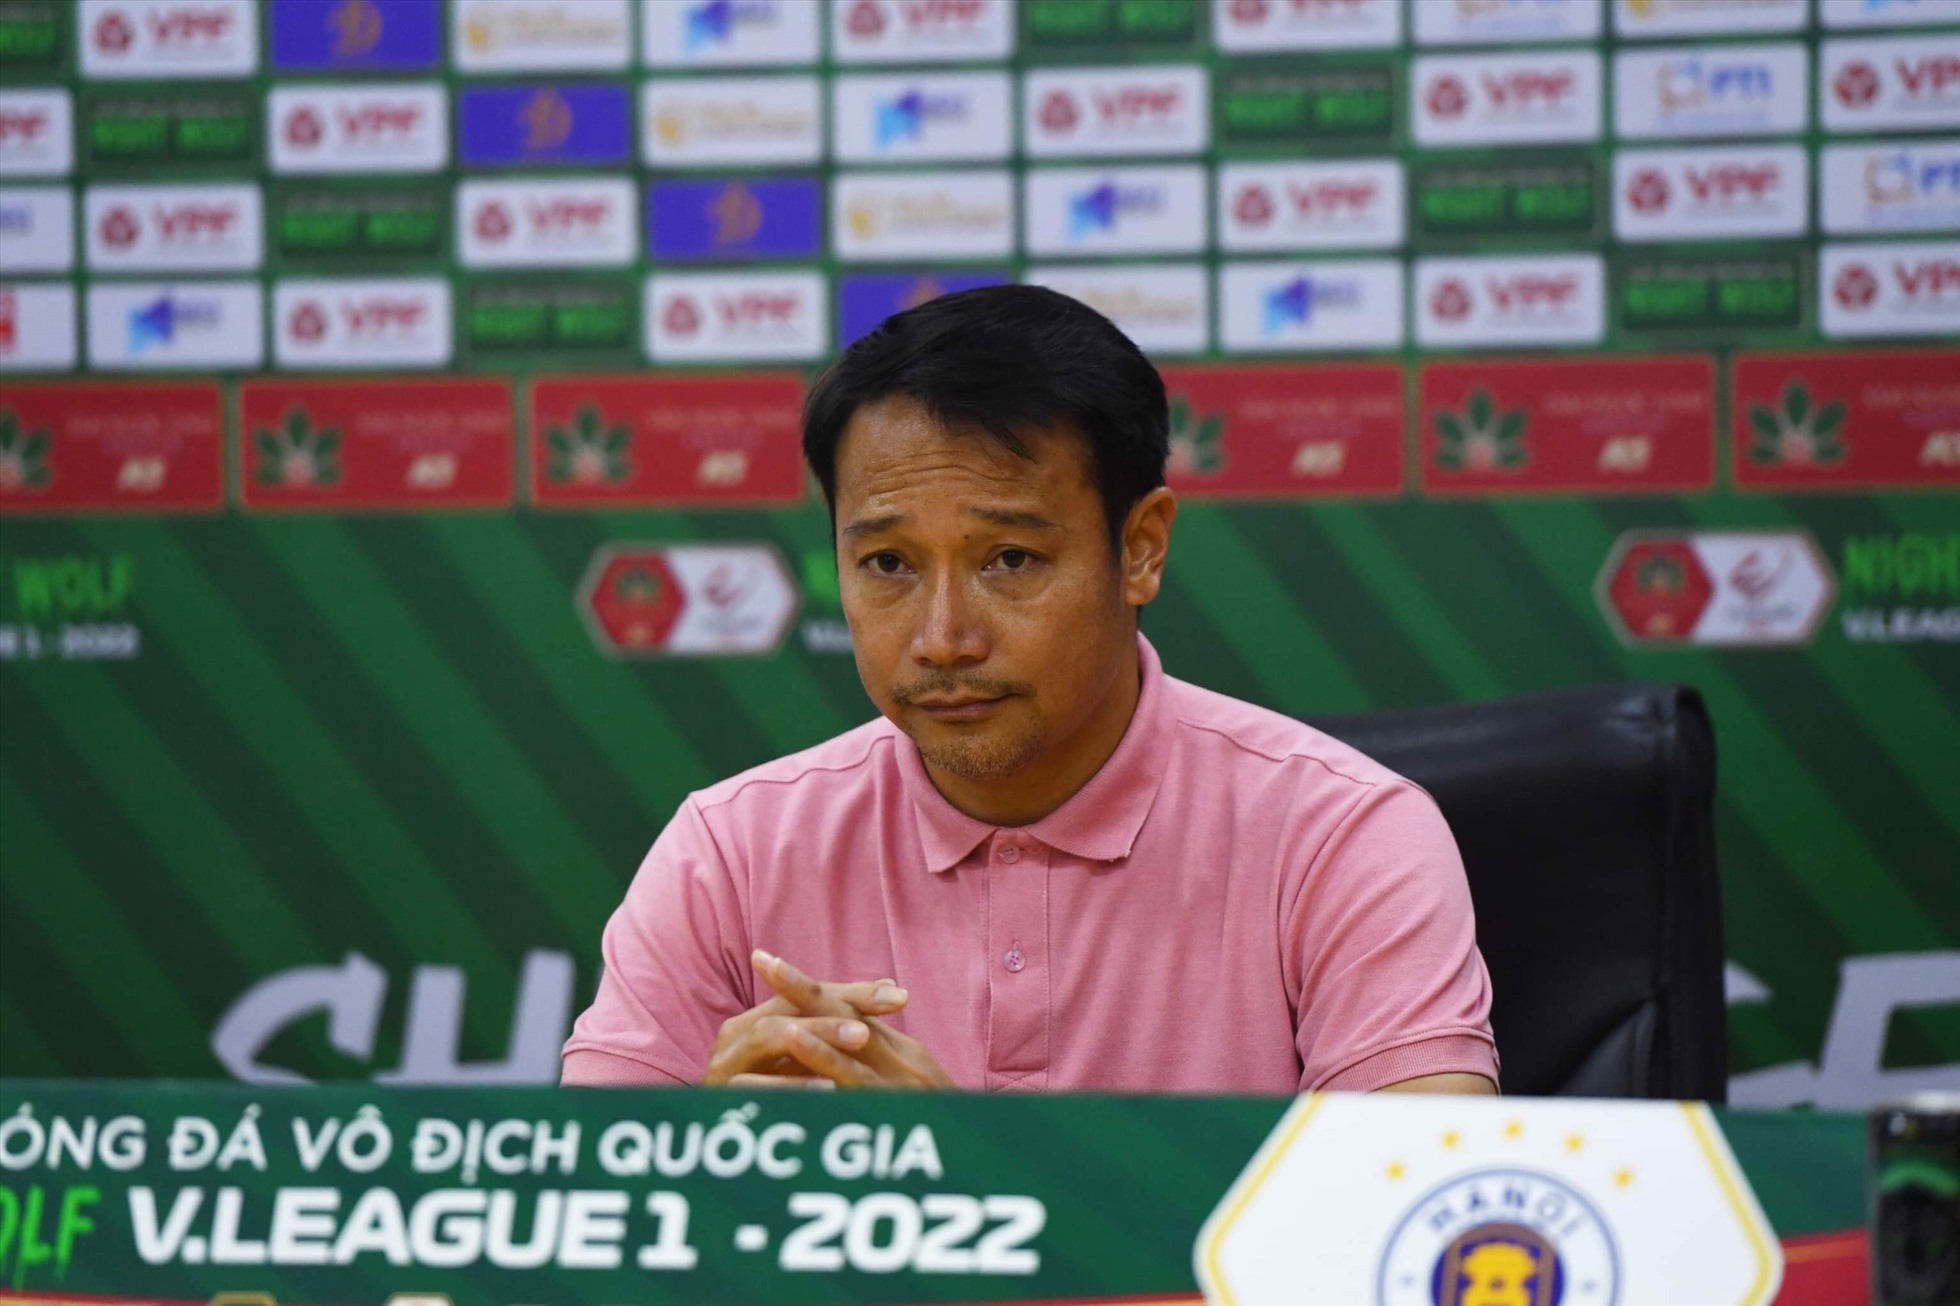 Huấn luyện viên Vũ Hồng Việt động viên các cầu thủ sau trận thua 2-5 trước Hà Nội. Ảnh: T.G